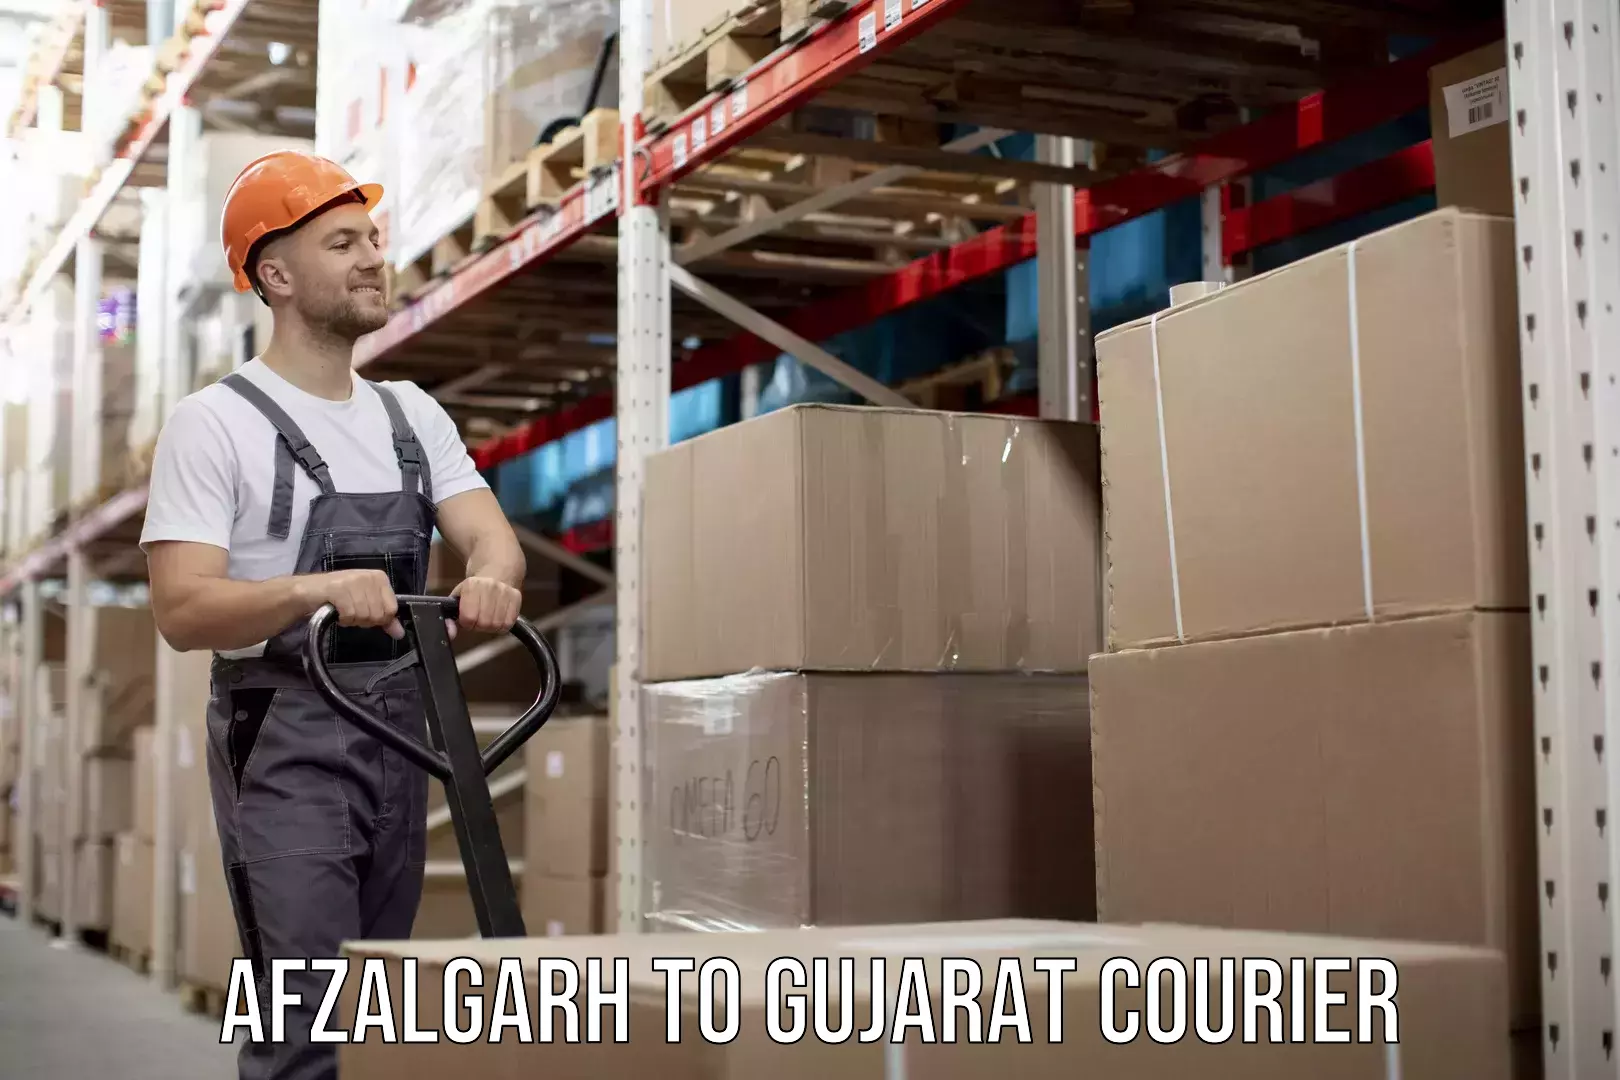 High-capacity parcel service Afzalgarh to Gujarat